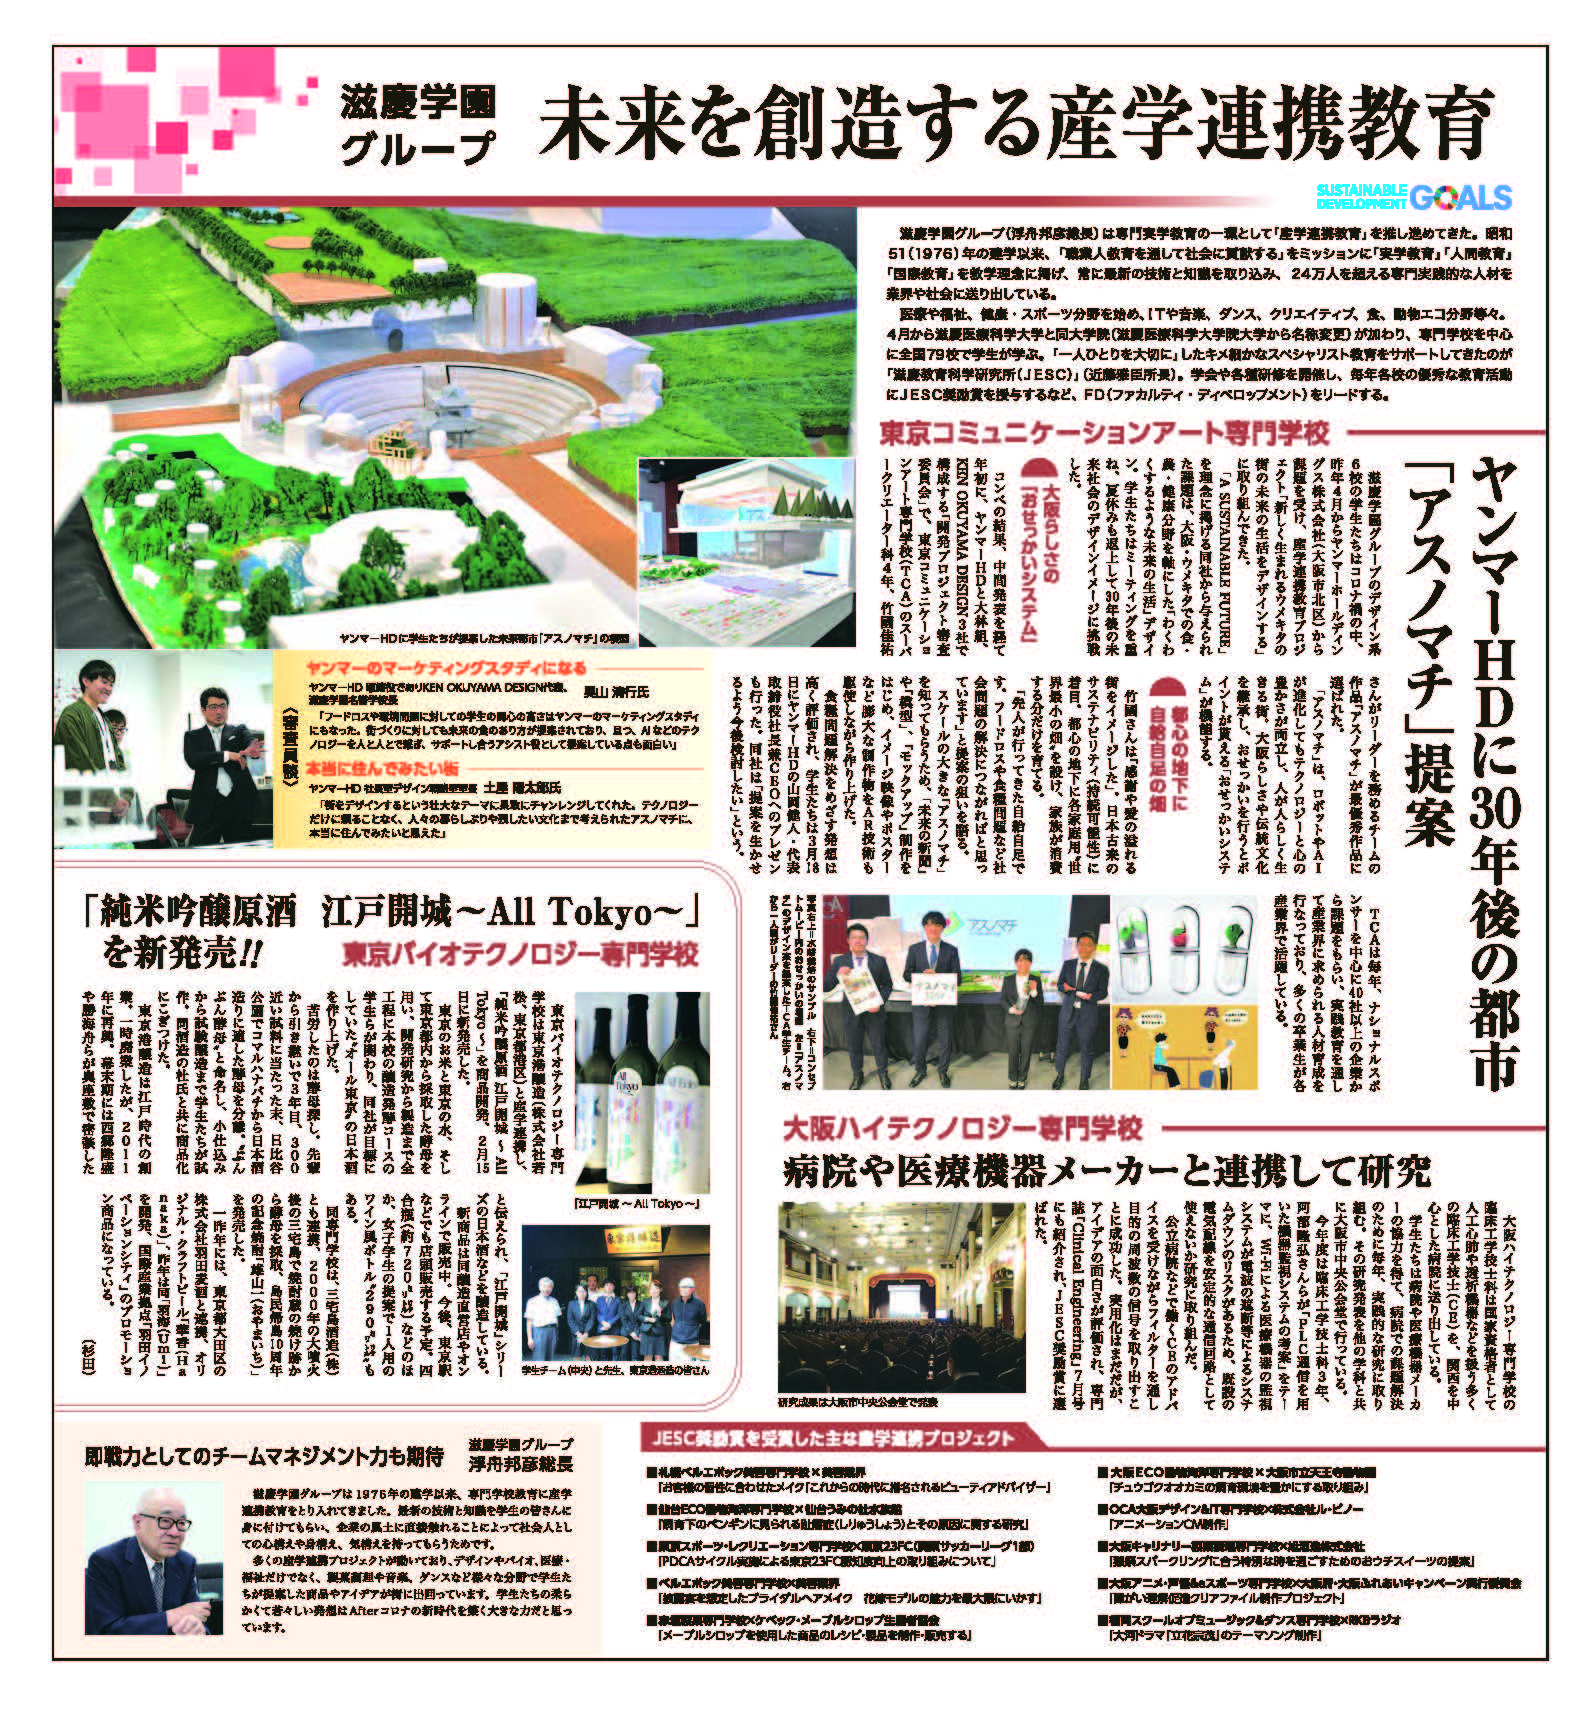 滋慶学園グループｘヤンマーhd 未来を創造する産学連携教育 3 29付 産経新聞朝刊に掲載 News Ken Okuyama Kod